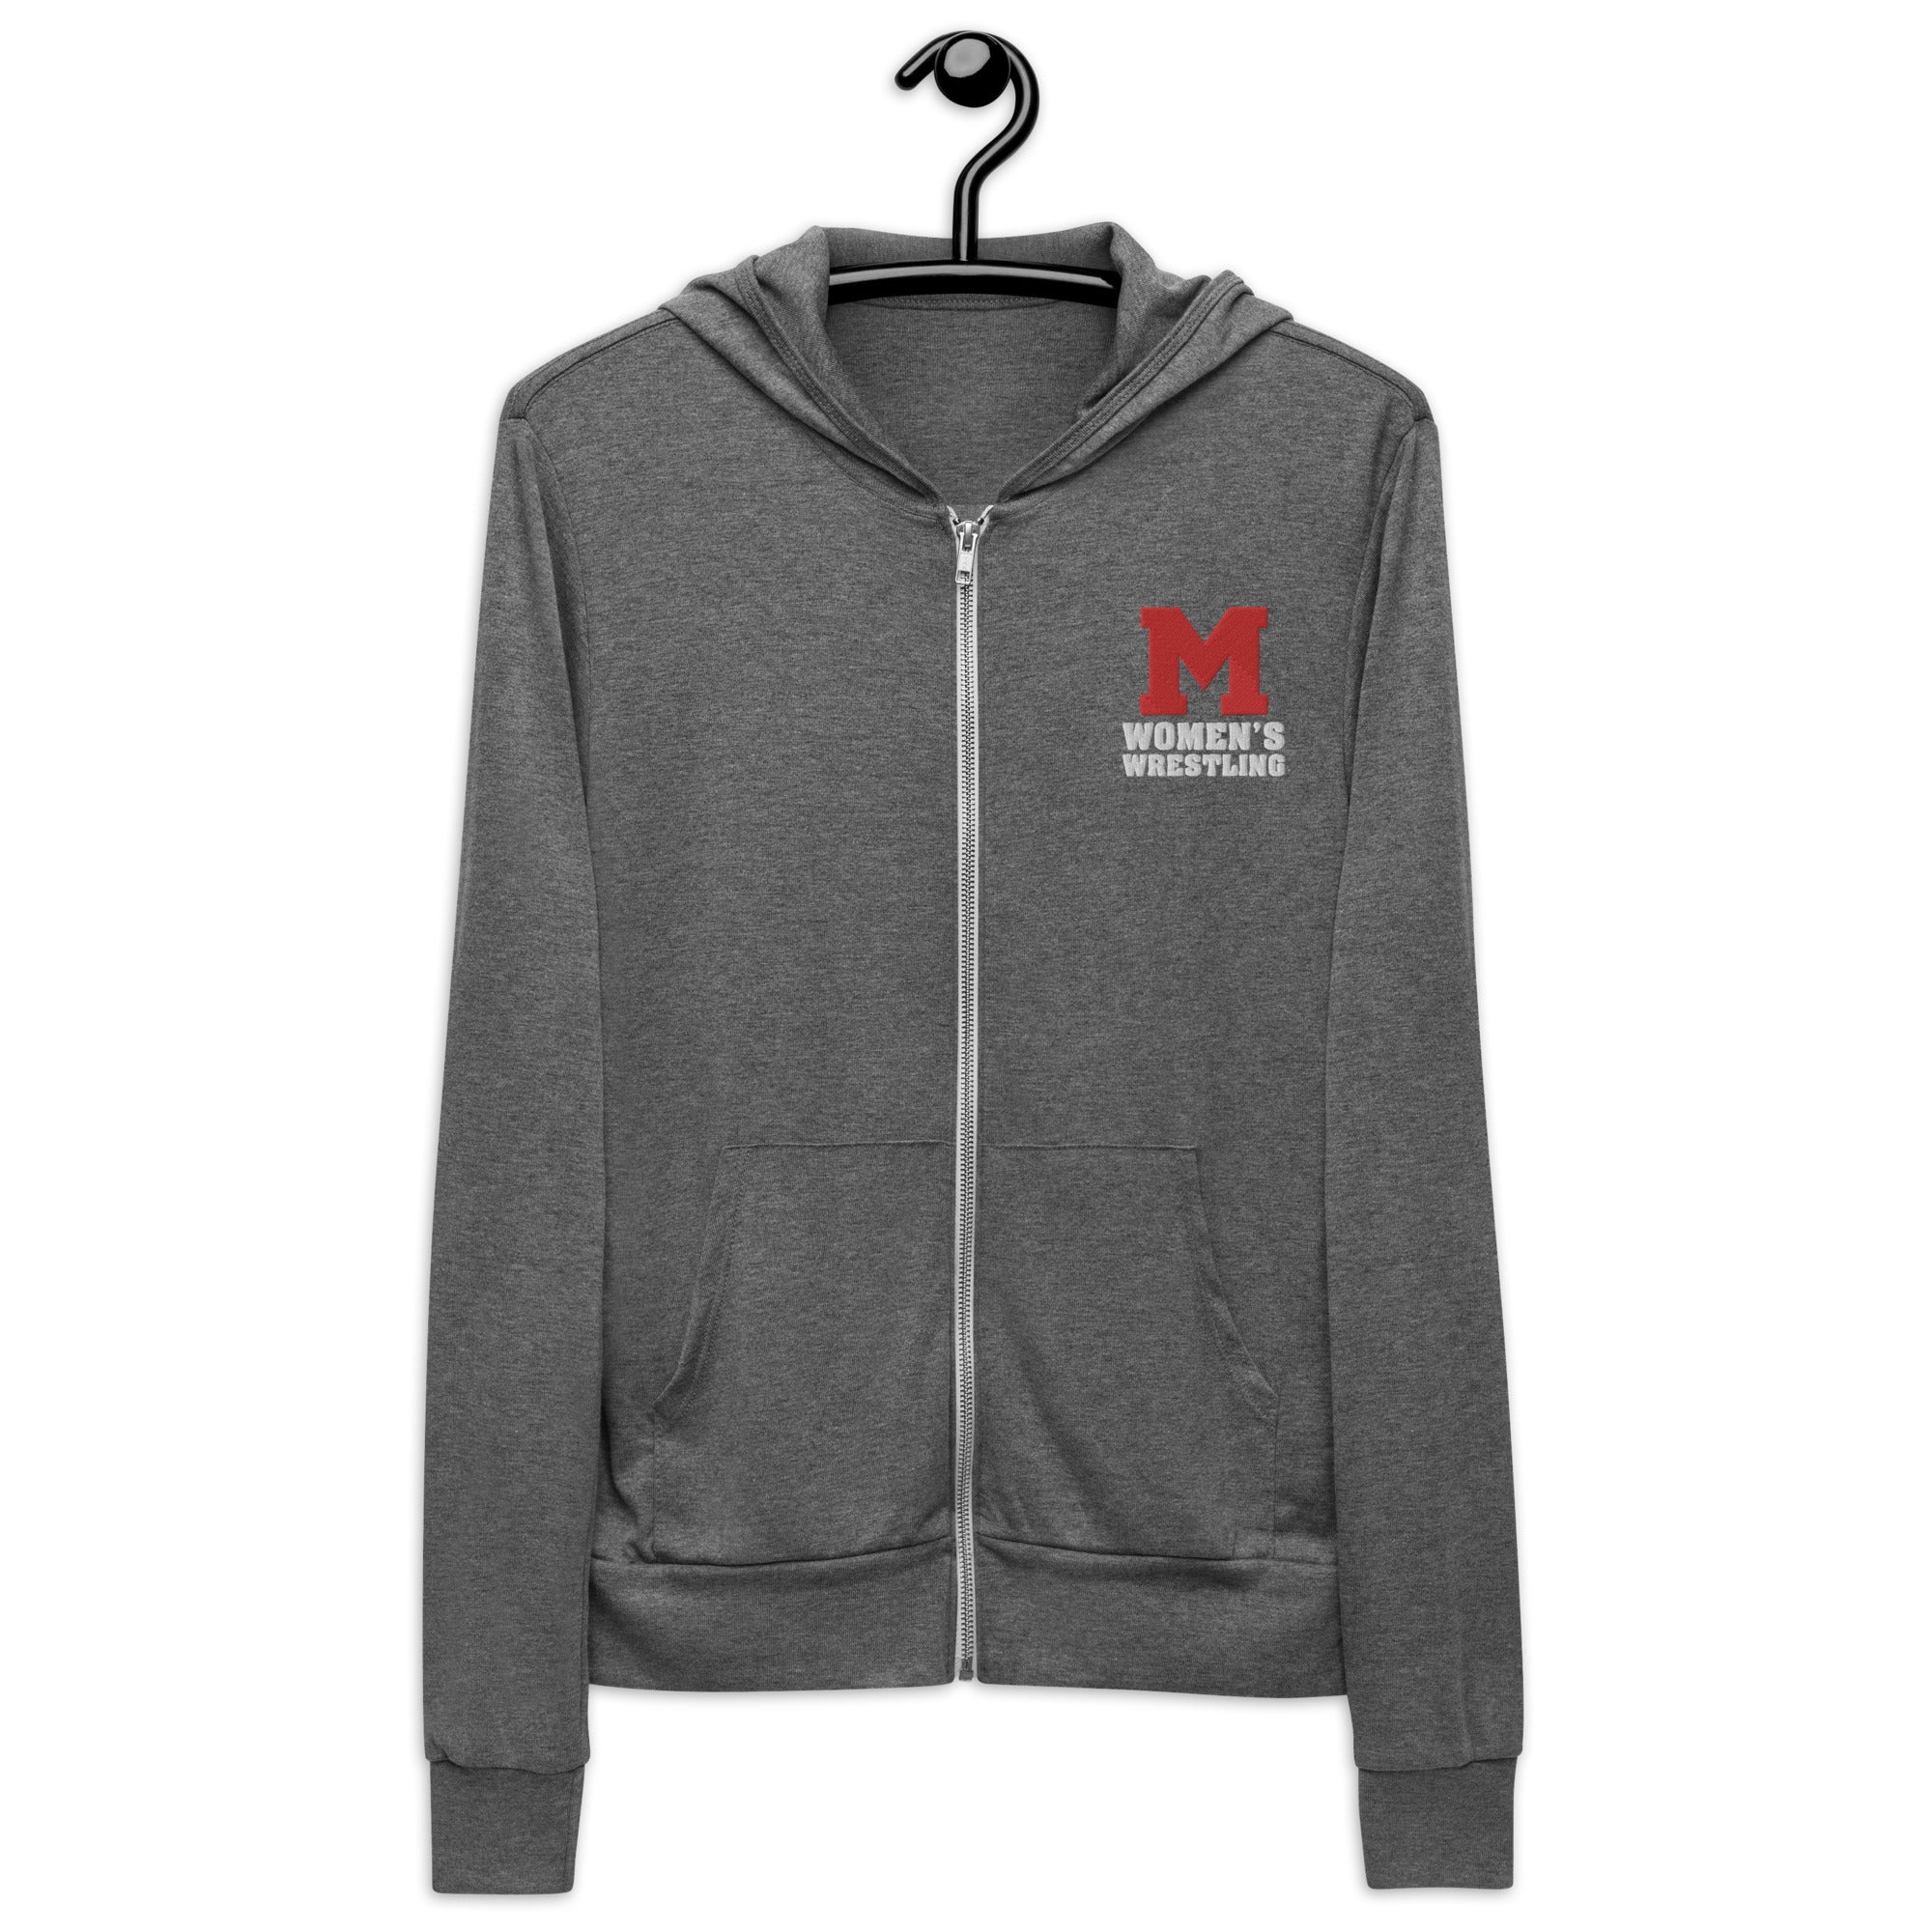 M Women's Wrestling Unisex zip hoodie